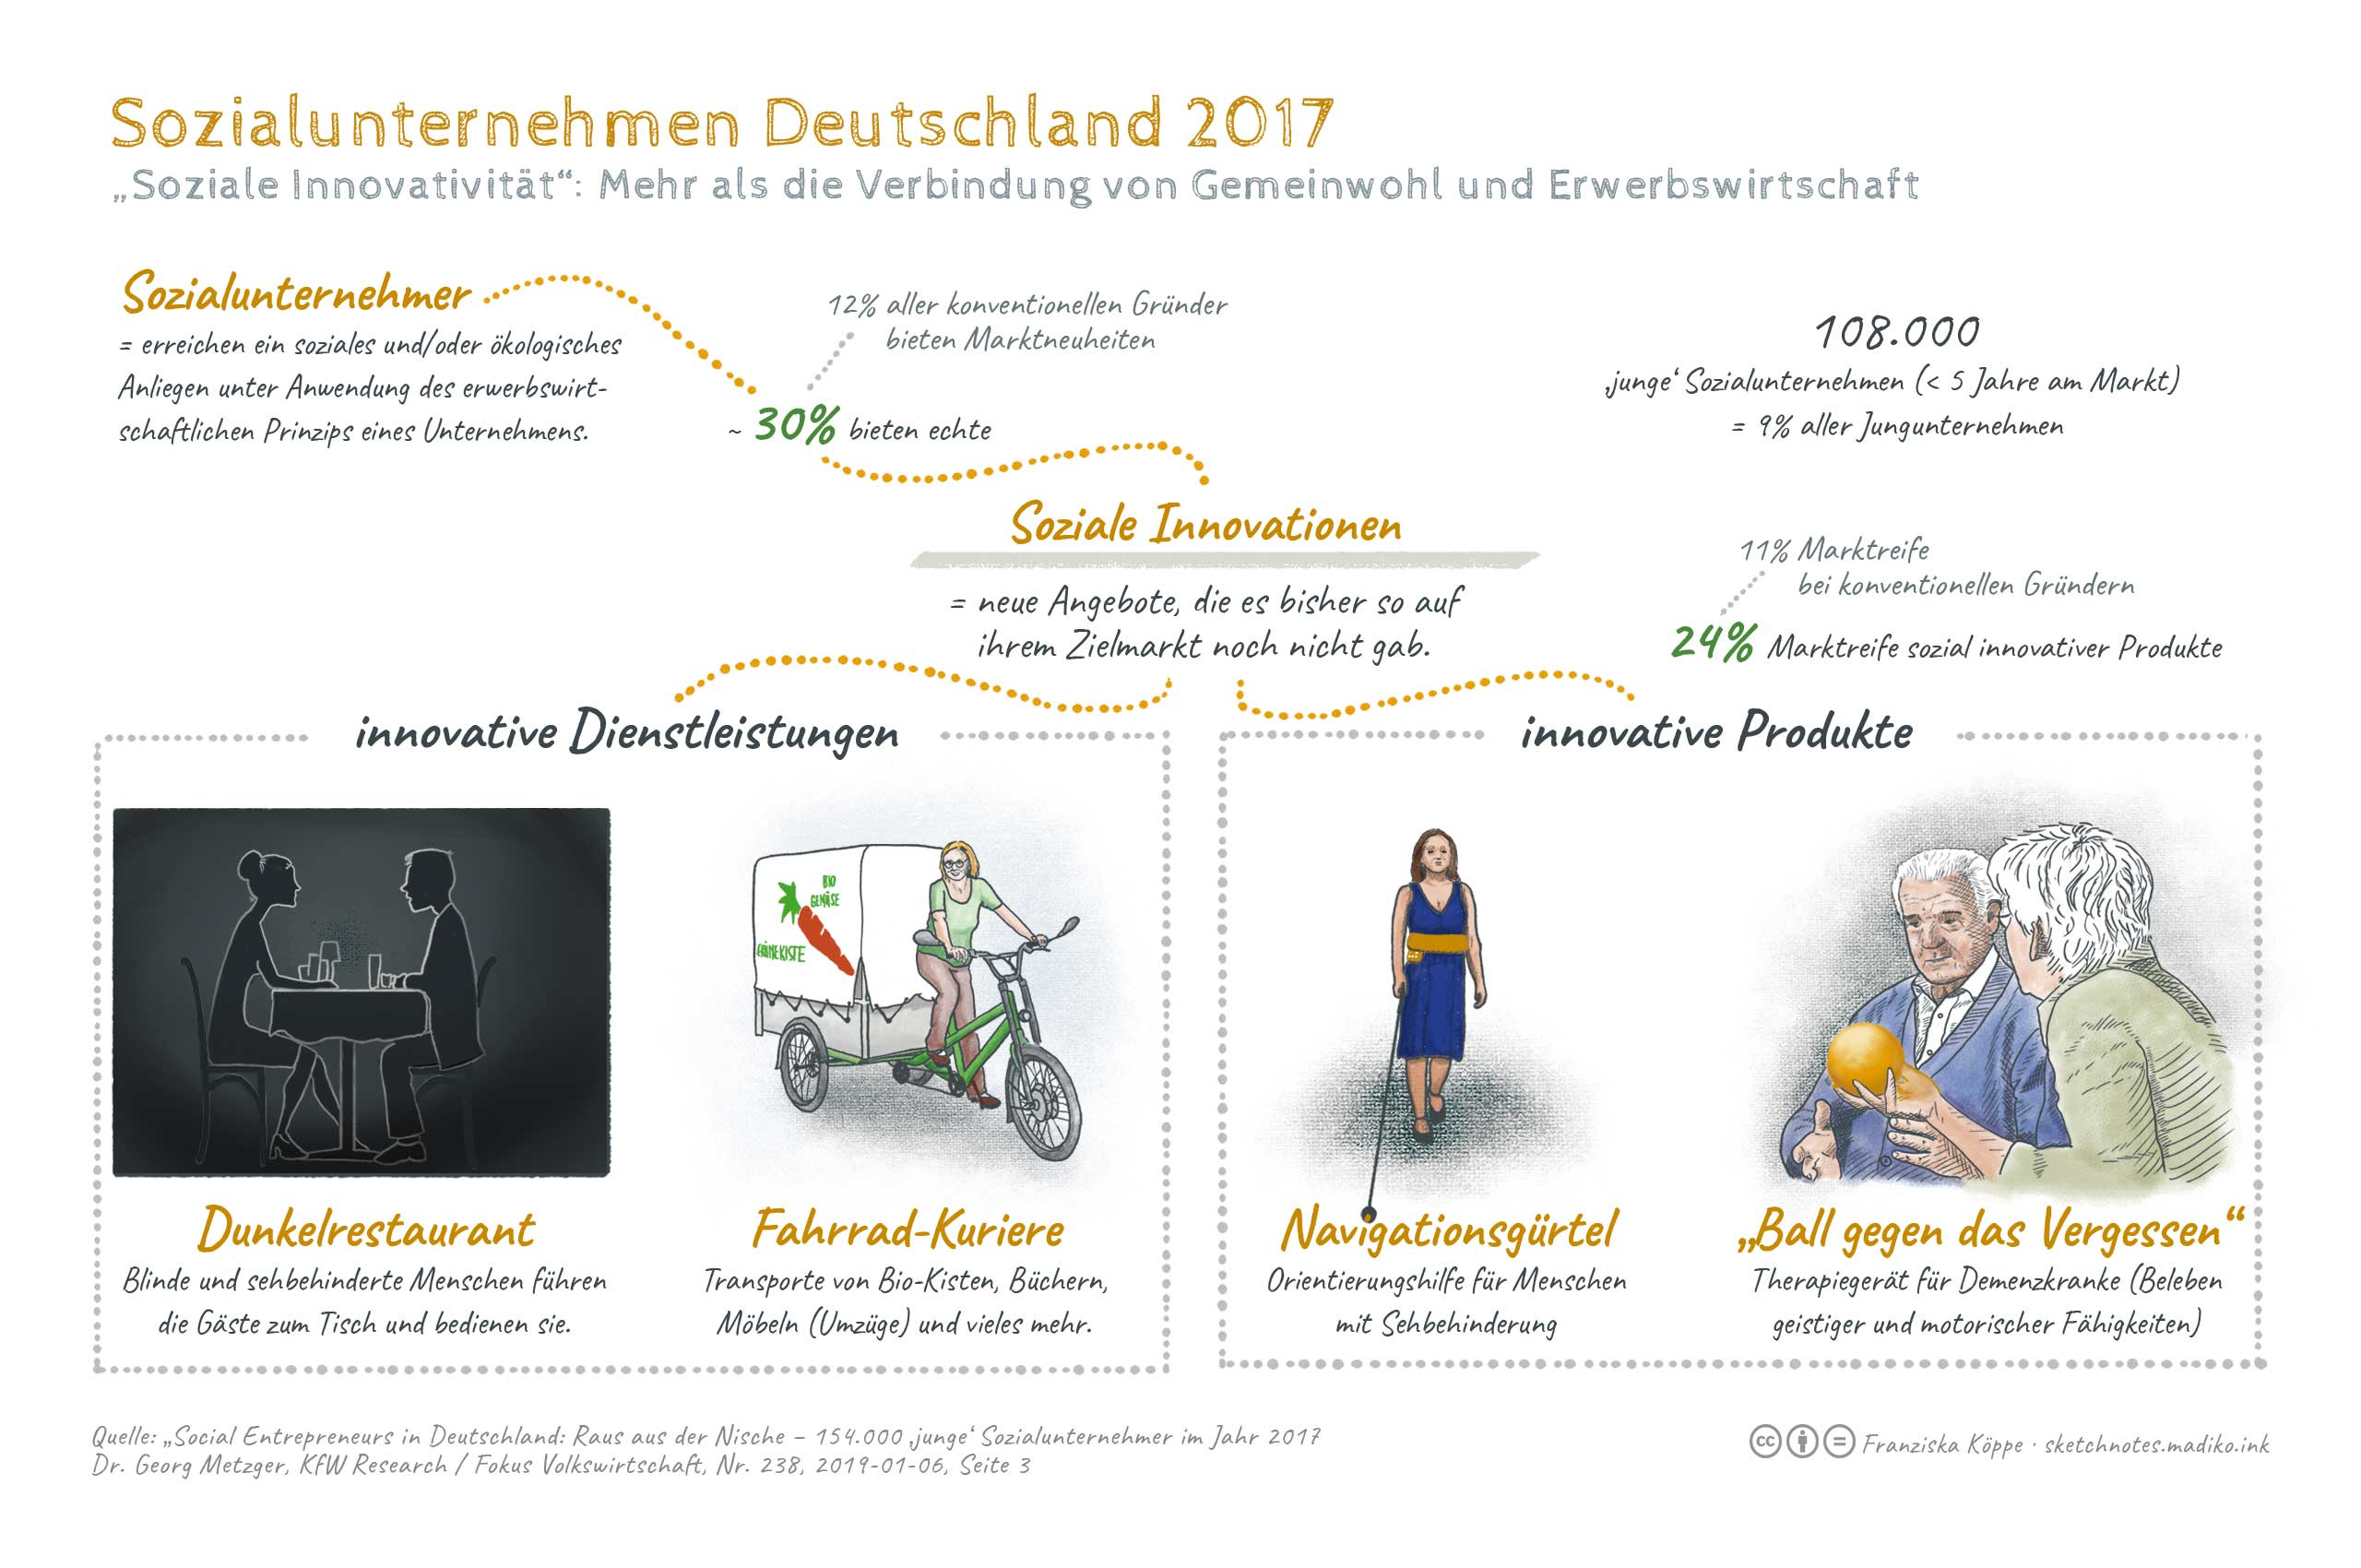 Sozialunternehmen in Deutschland, Soziale Innovationen – mehr als die Verbindung von Gemeinwohl und Erwerbswirtschaft